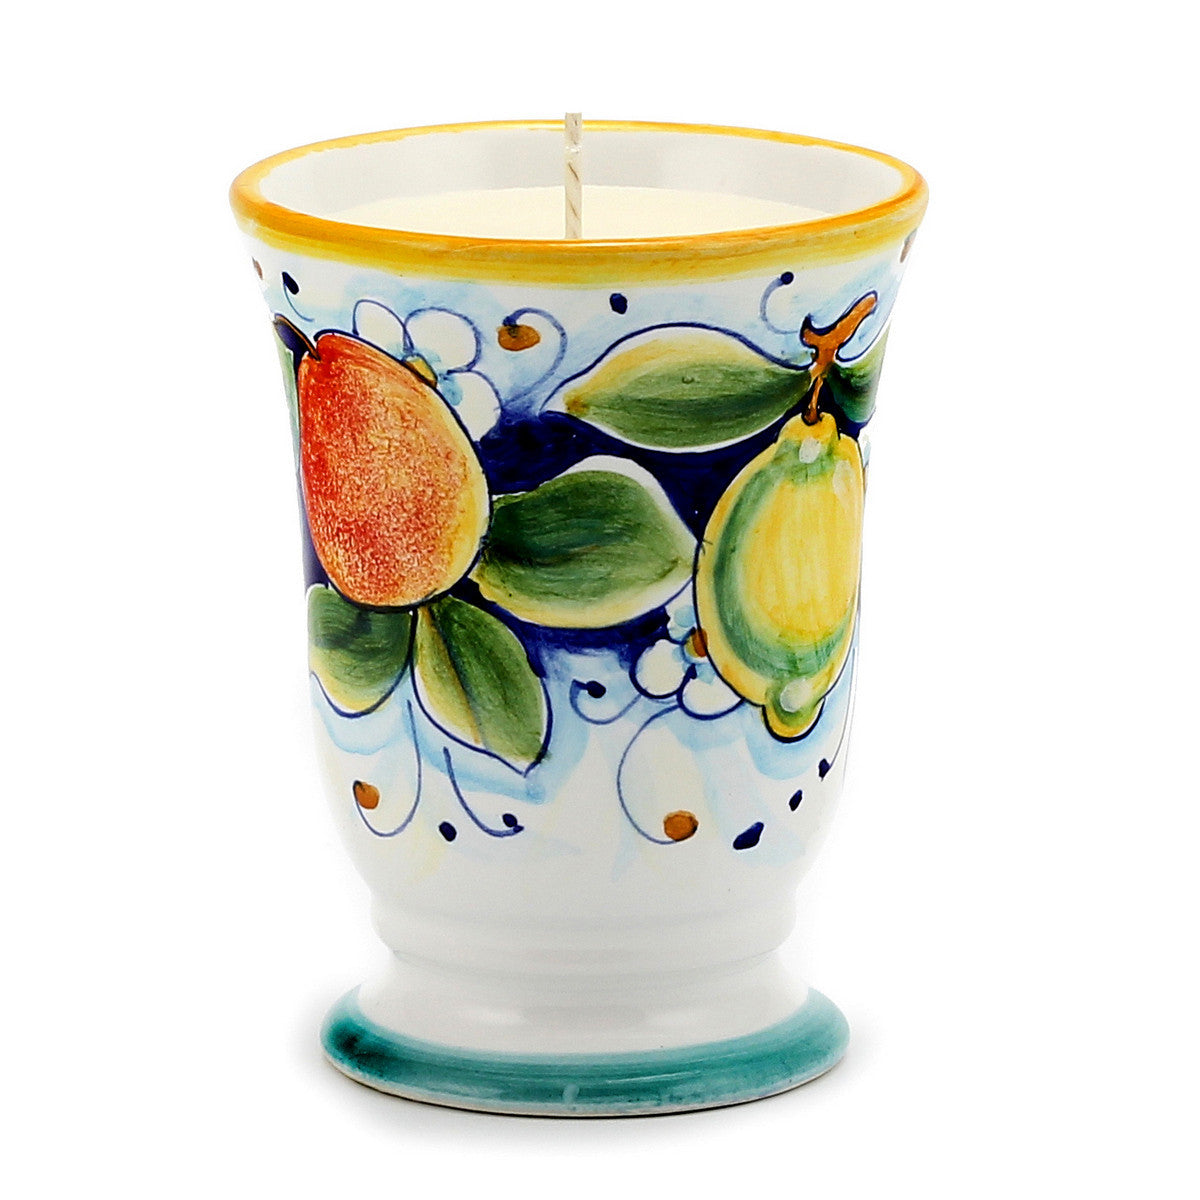 DERUTA CANDLES: Bell Cup Candle ~ Deruta Frutta Design - Artistica.com